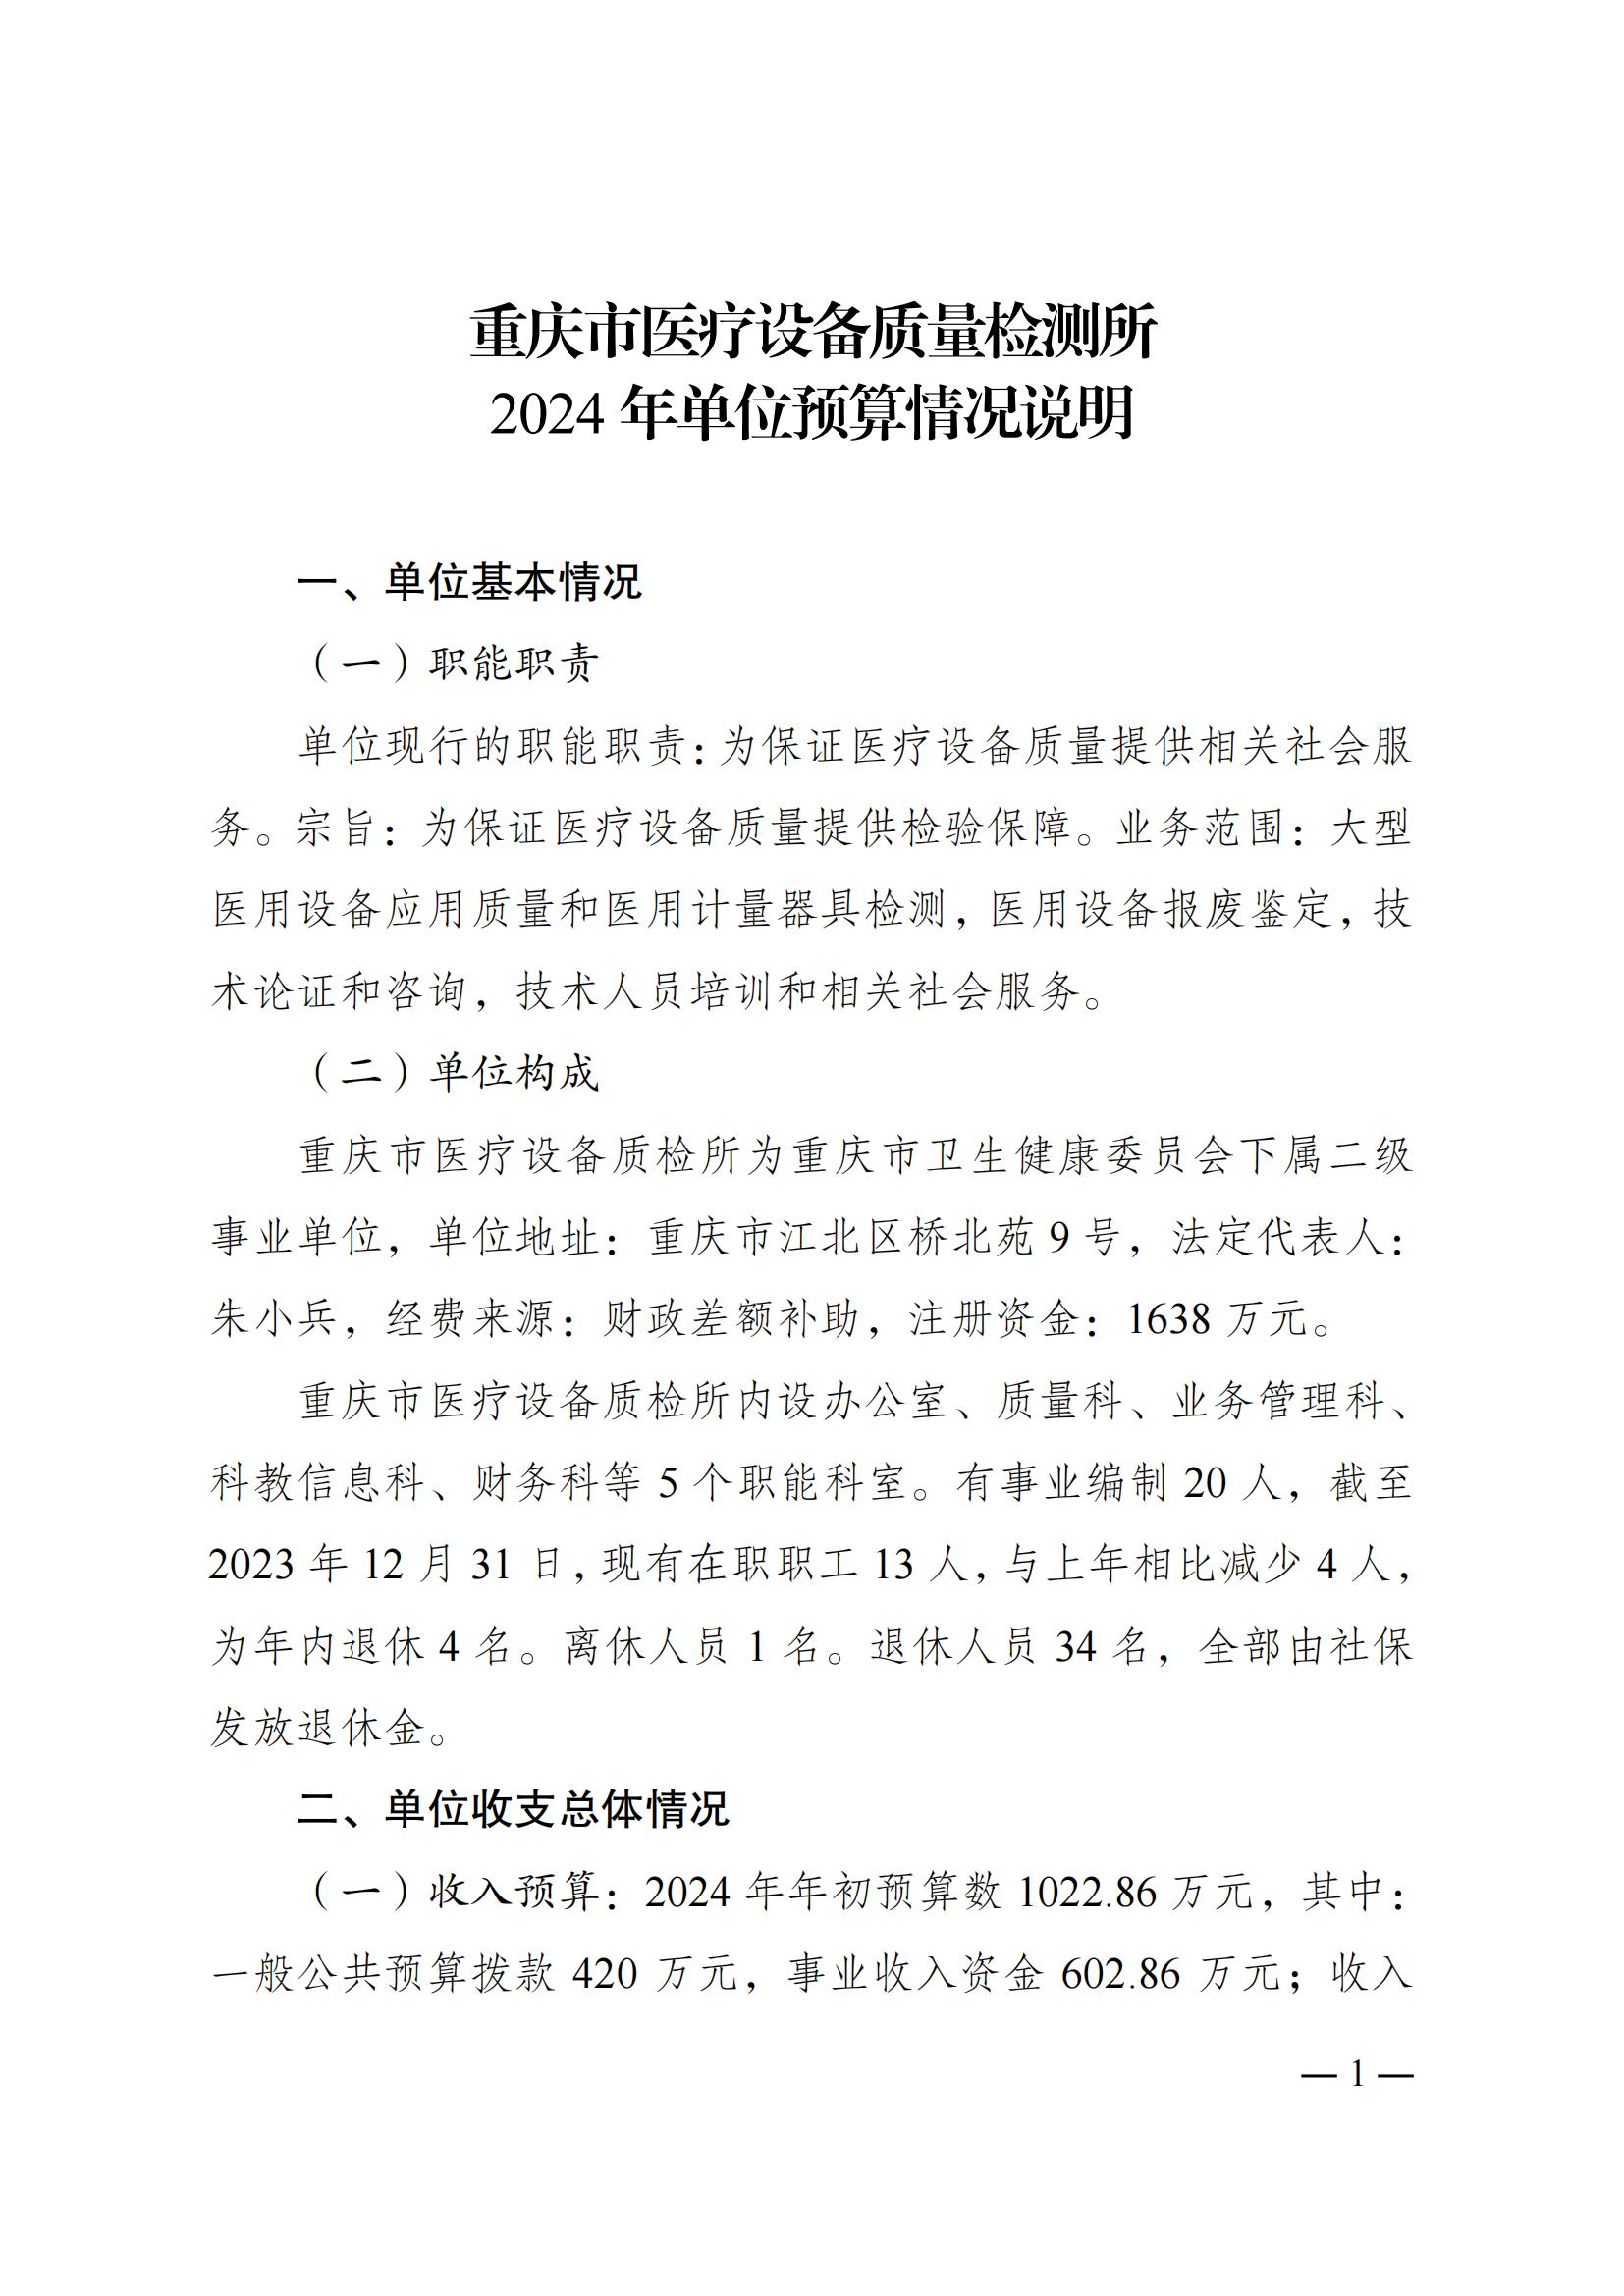 重庆市医疗设备质量检测所2024年单位预算情况说明_00.jpg